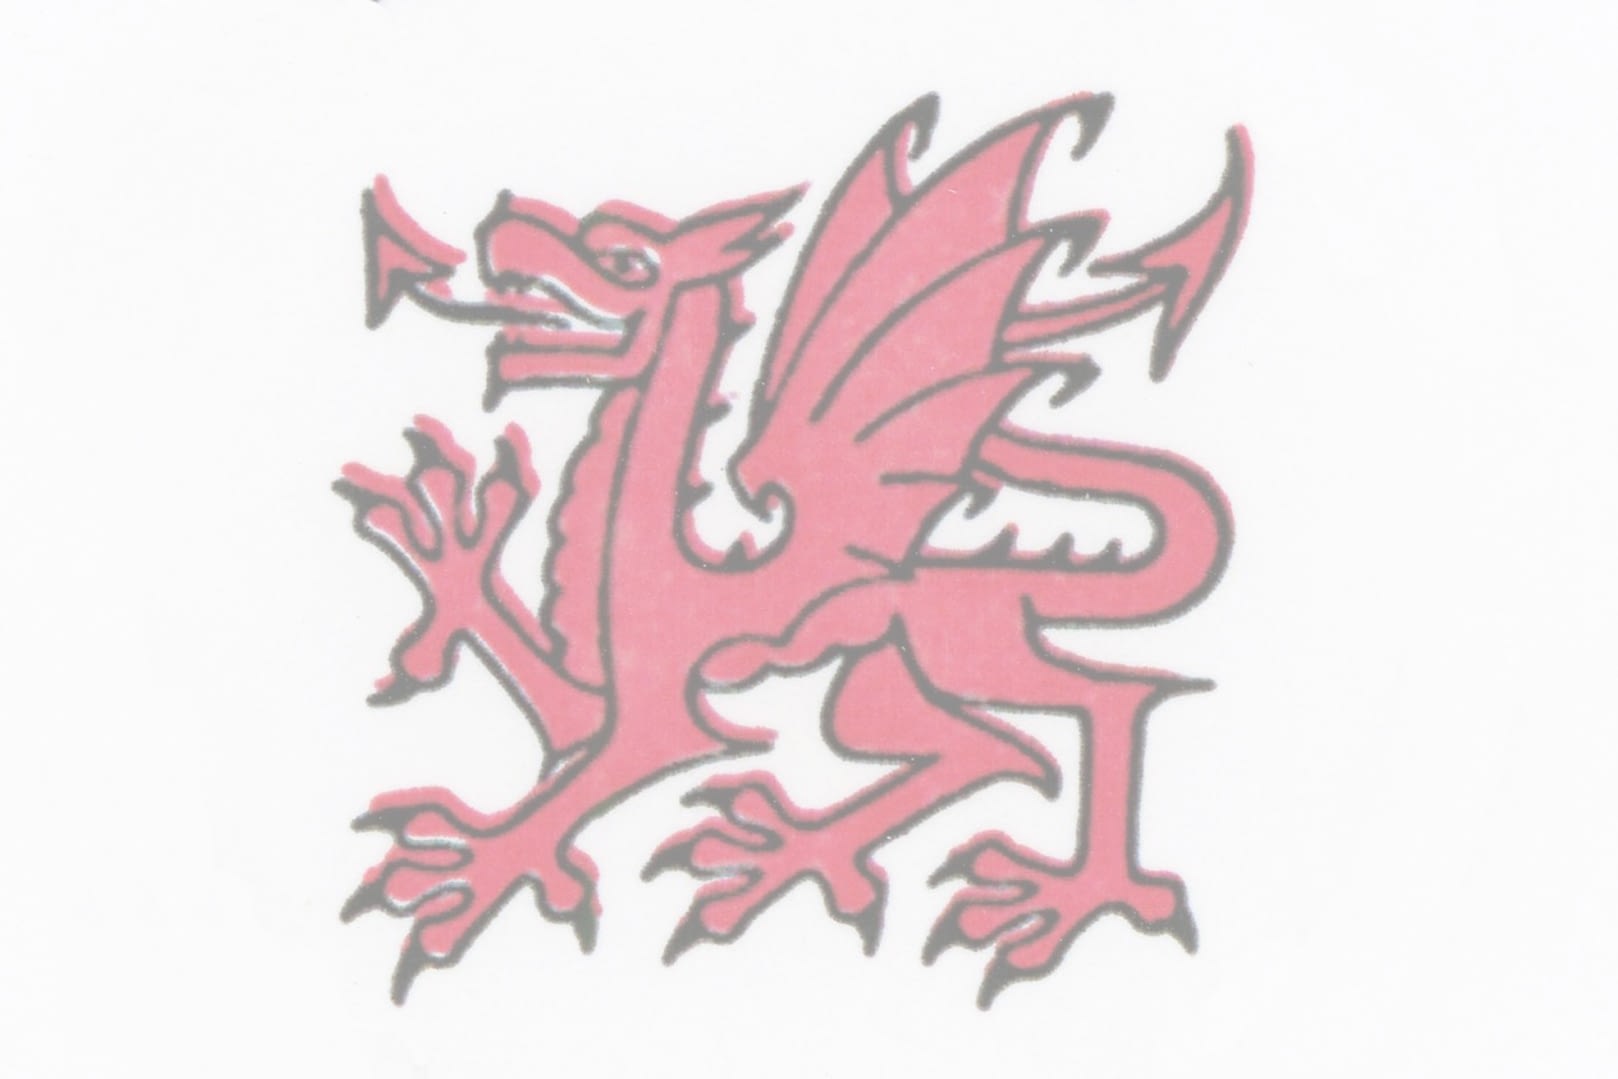 Welsh Postal History Society